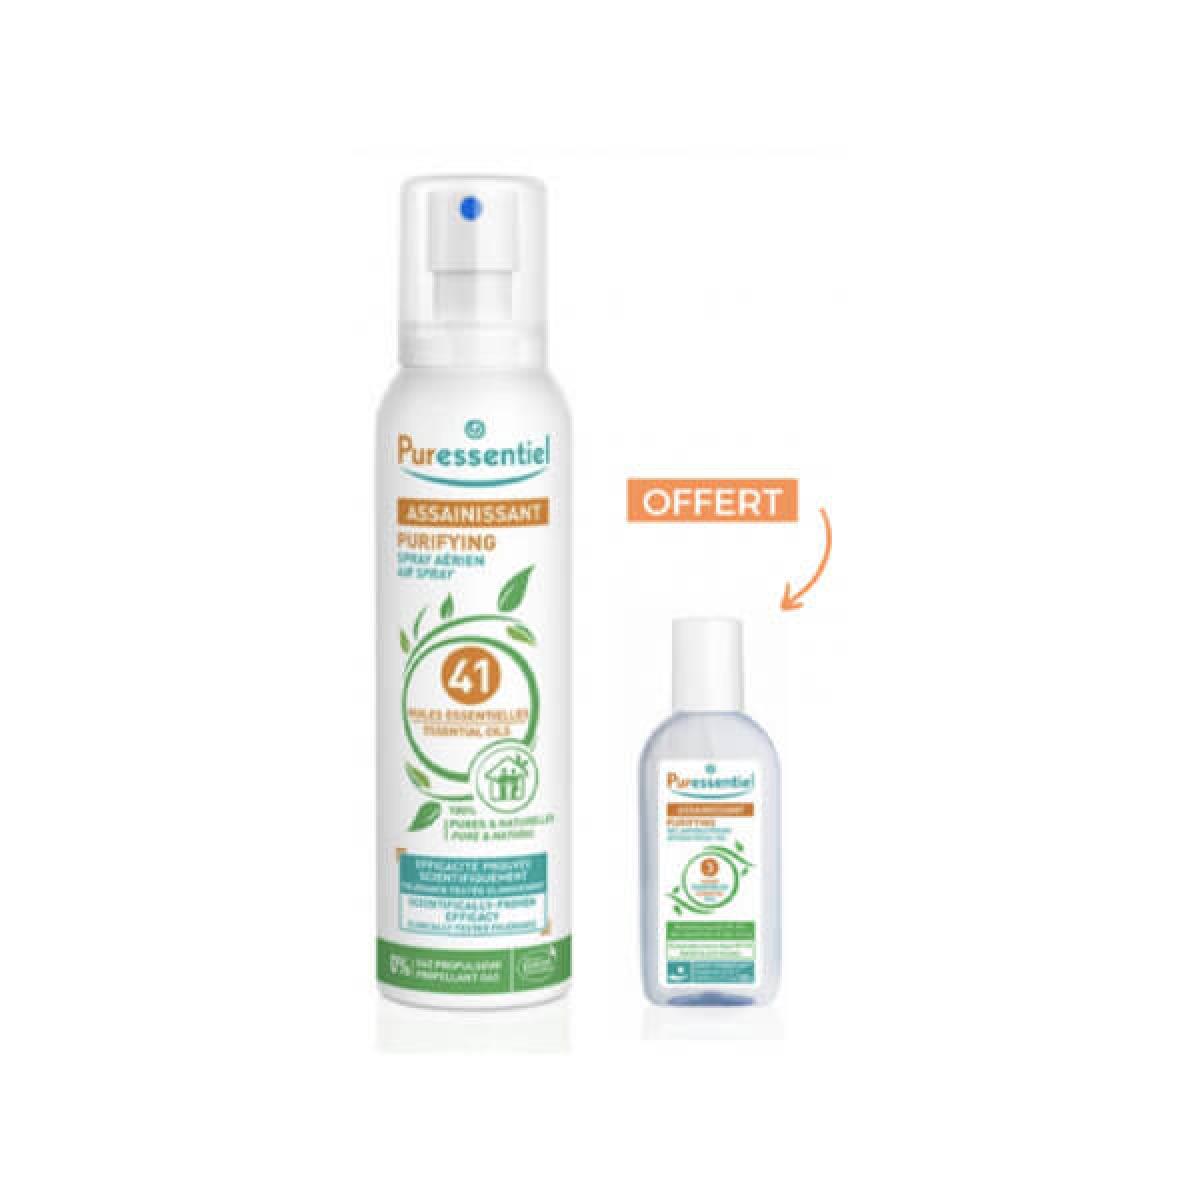 Puressentiel Assainissant Spray Aerien 200ml+Gel Antibacterien 80ml pack 